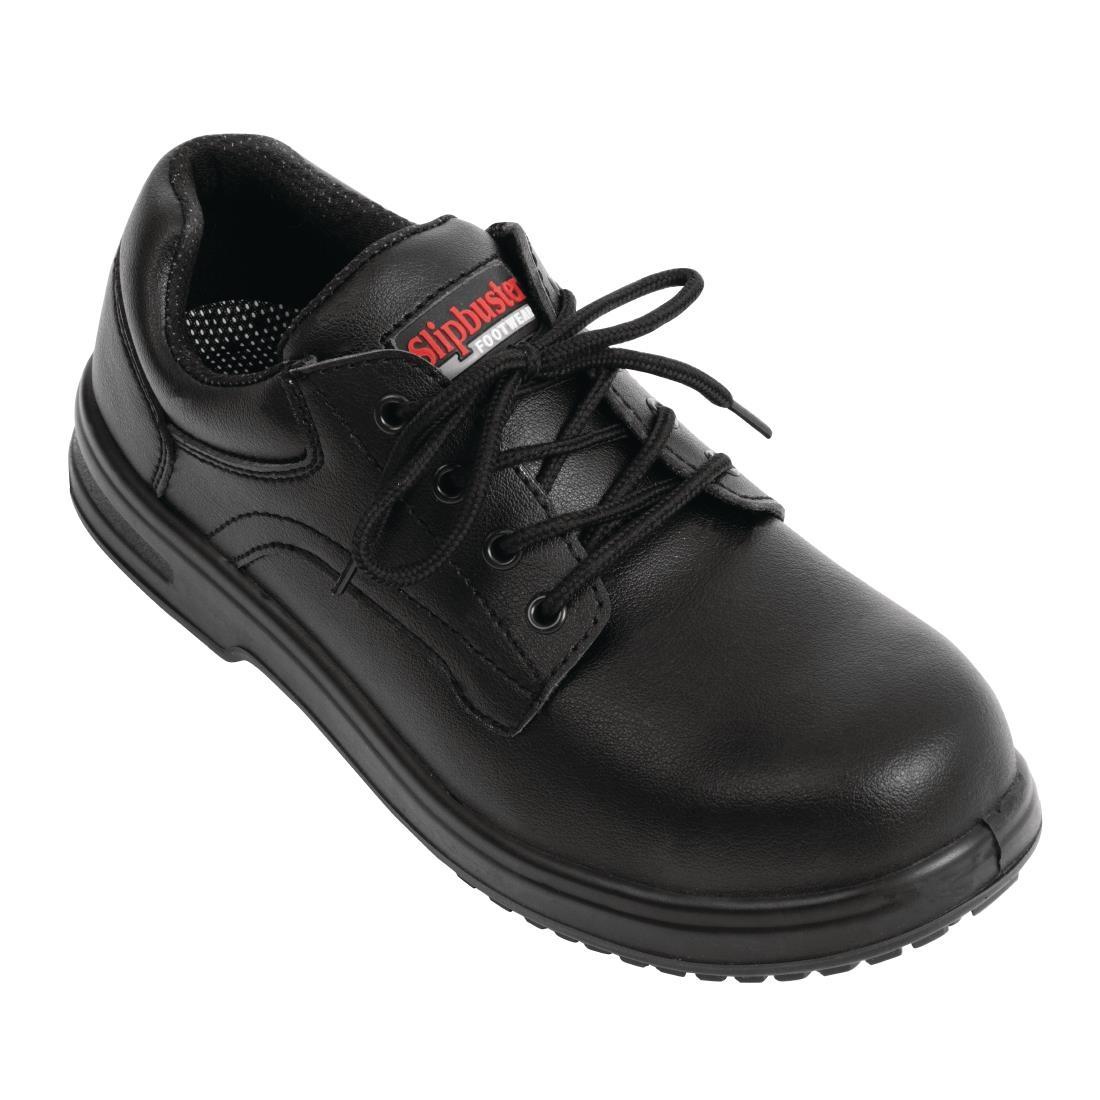 Slipbuster Basic Shoes Slip Resistant Black 47 - BB498-47  - 1